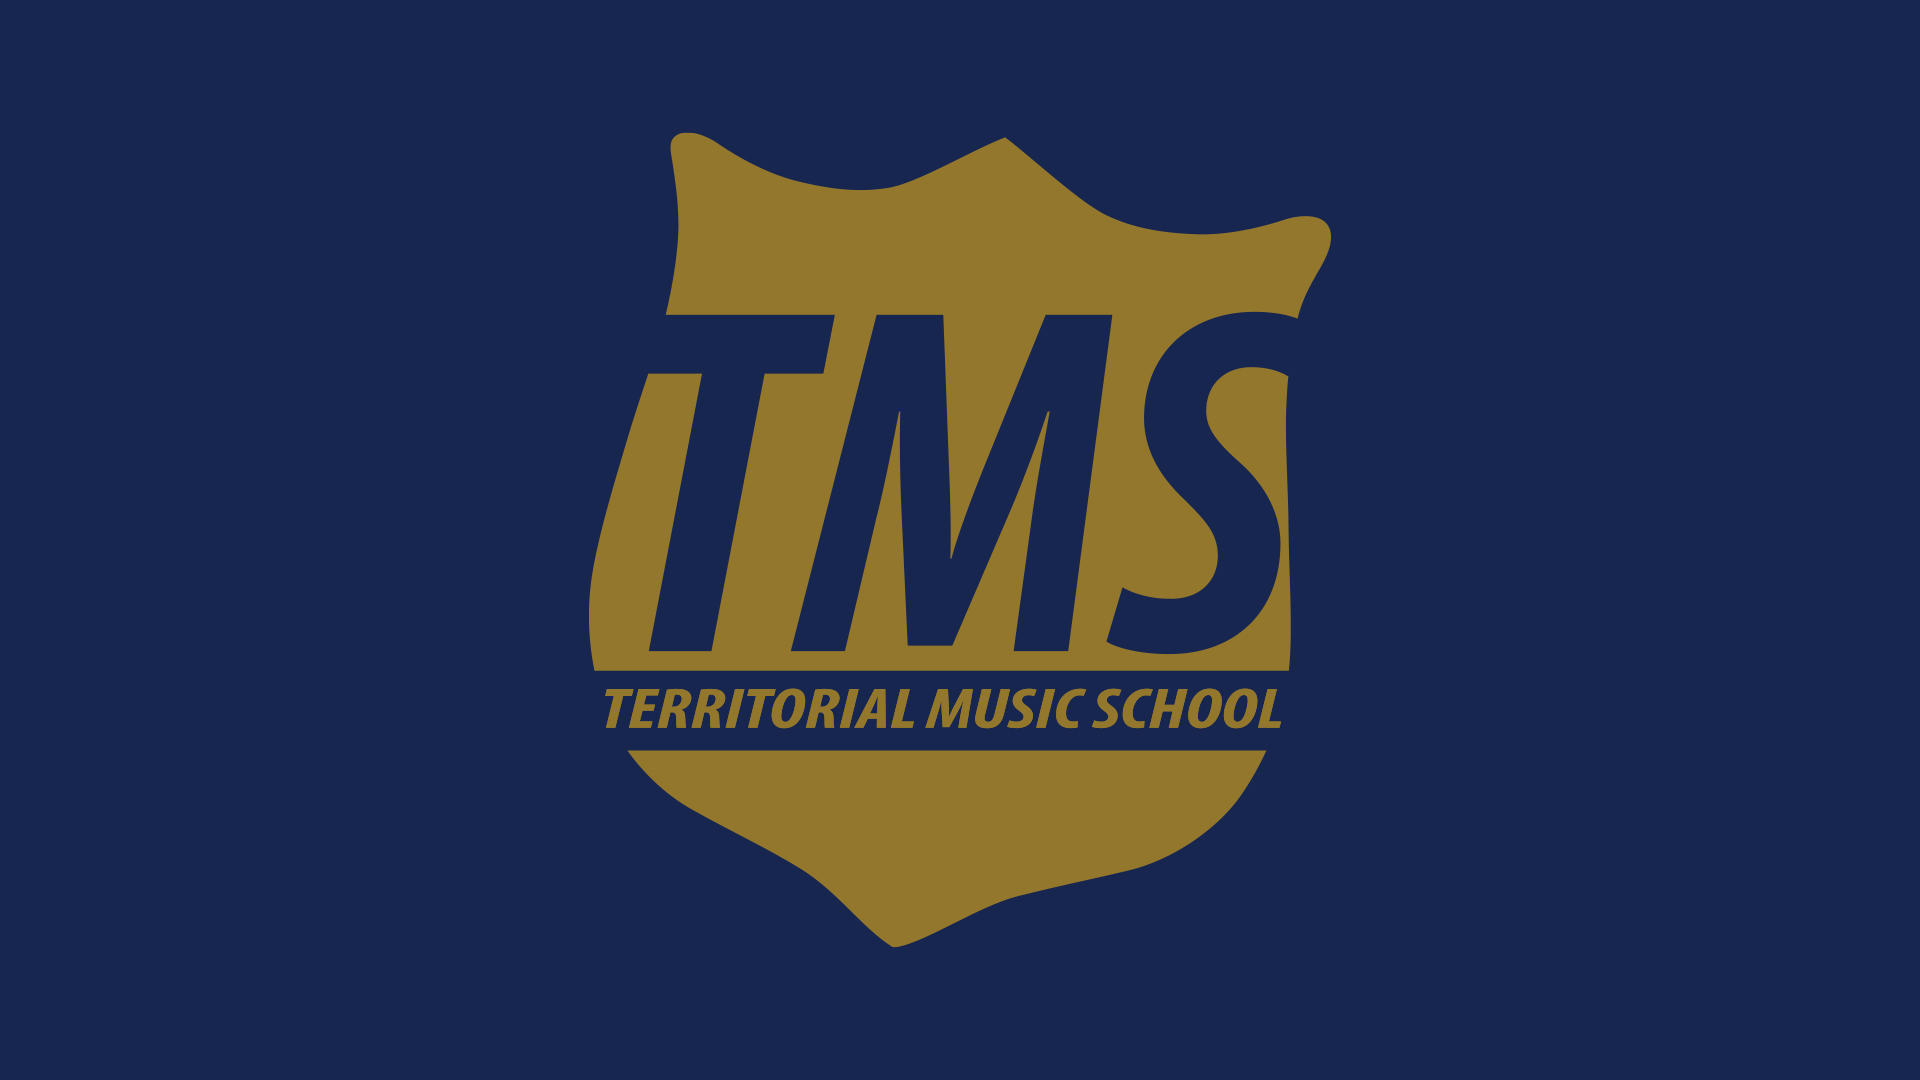 Territorial Music School logo